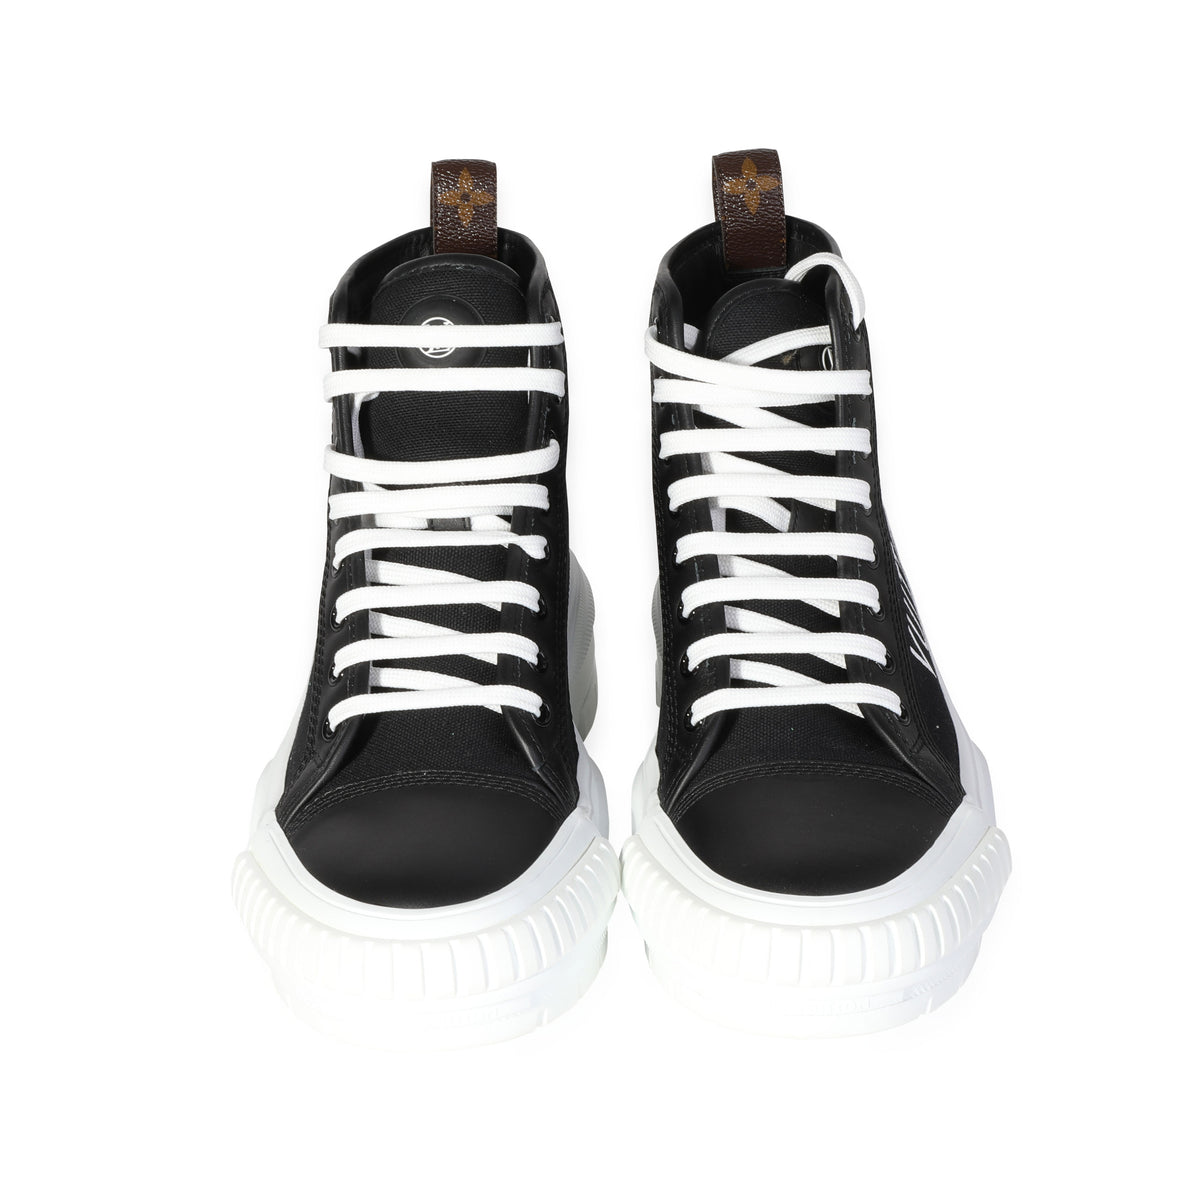 LOUIS VUITTON Canvas LV Squad Sneaker Boots 38 Black 998716